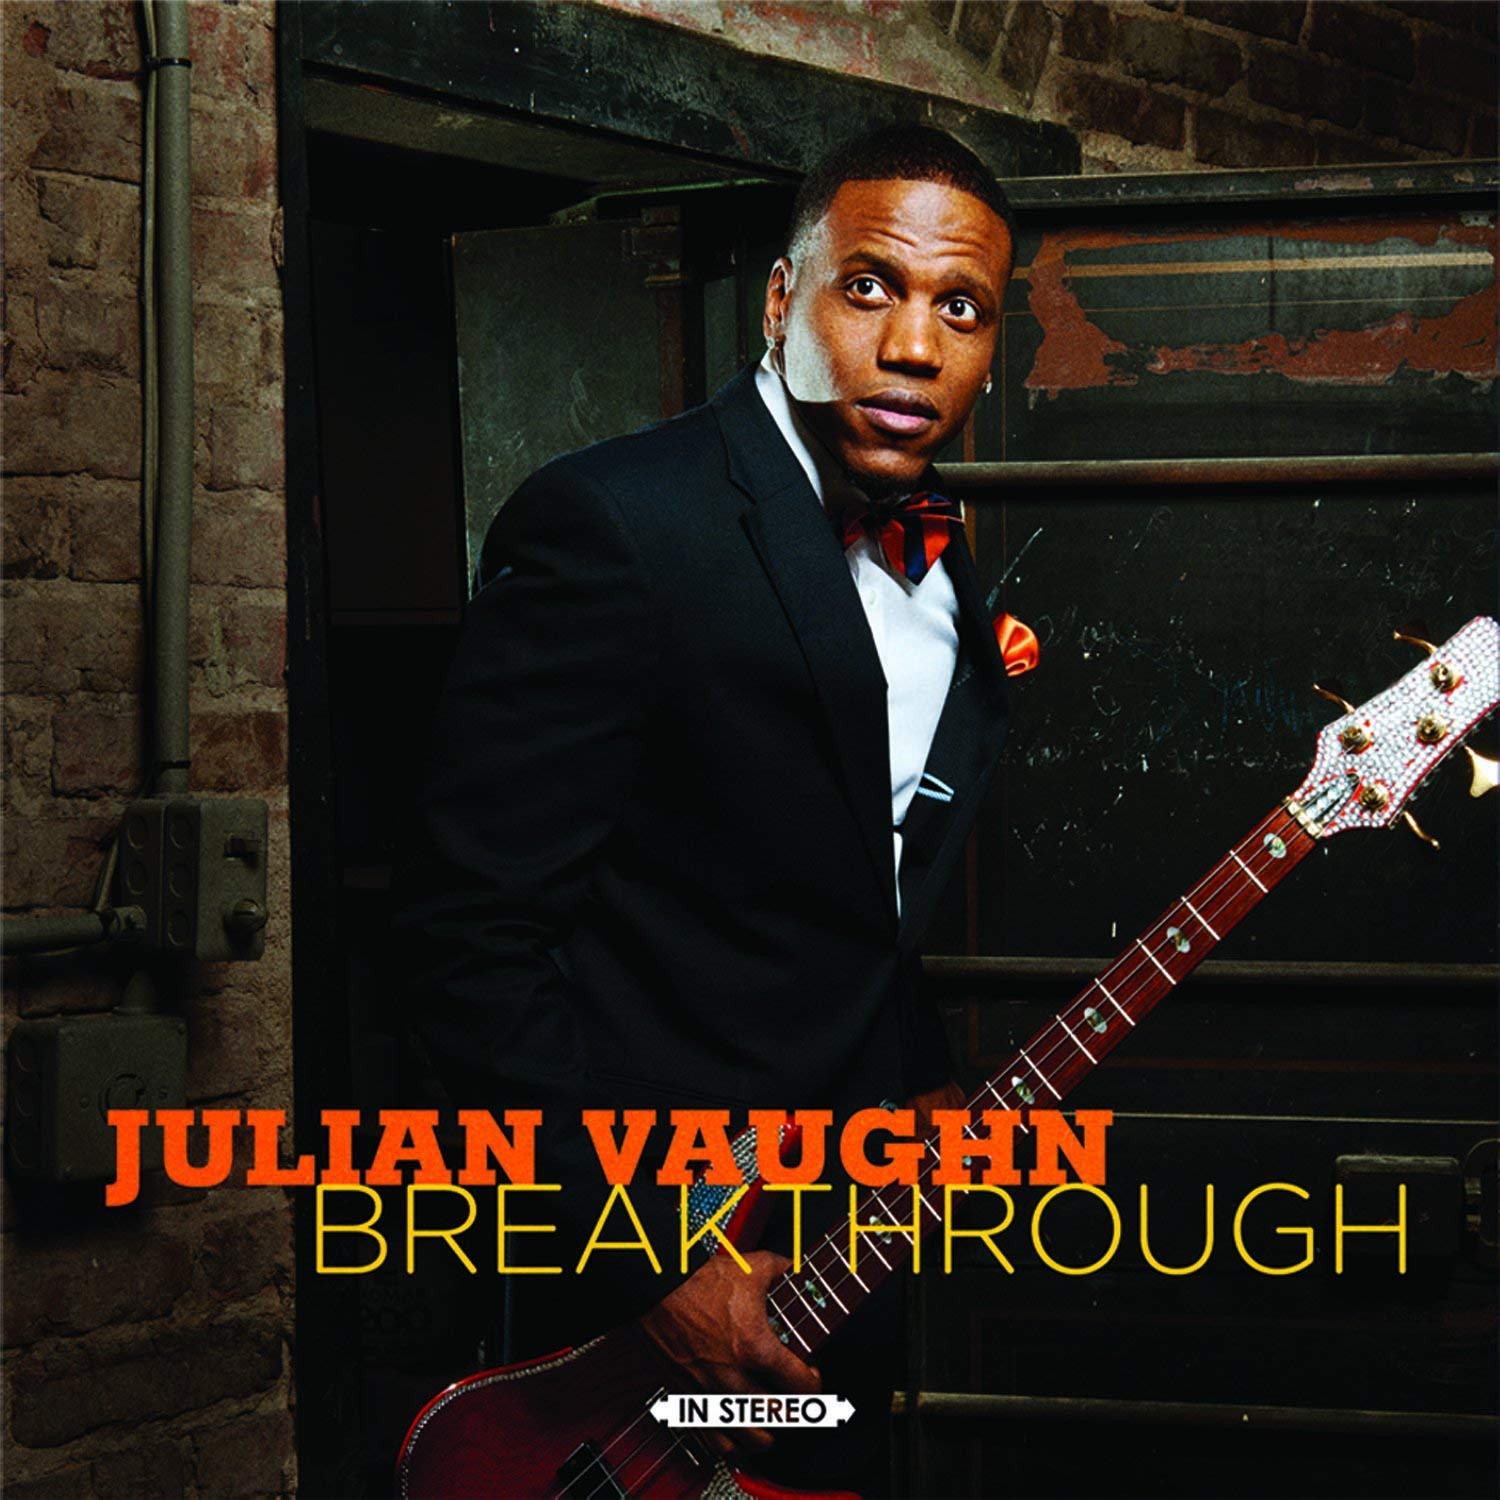 Church Street Jazz Series Opens with Julian Vaughn